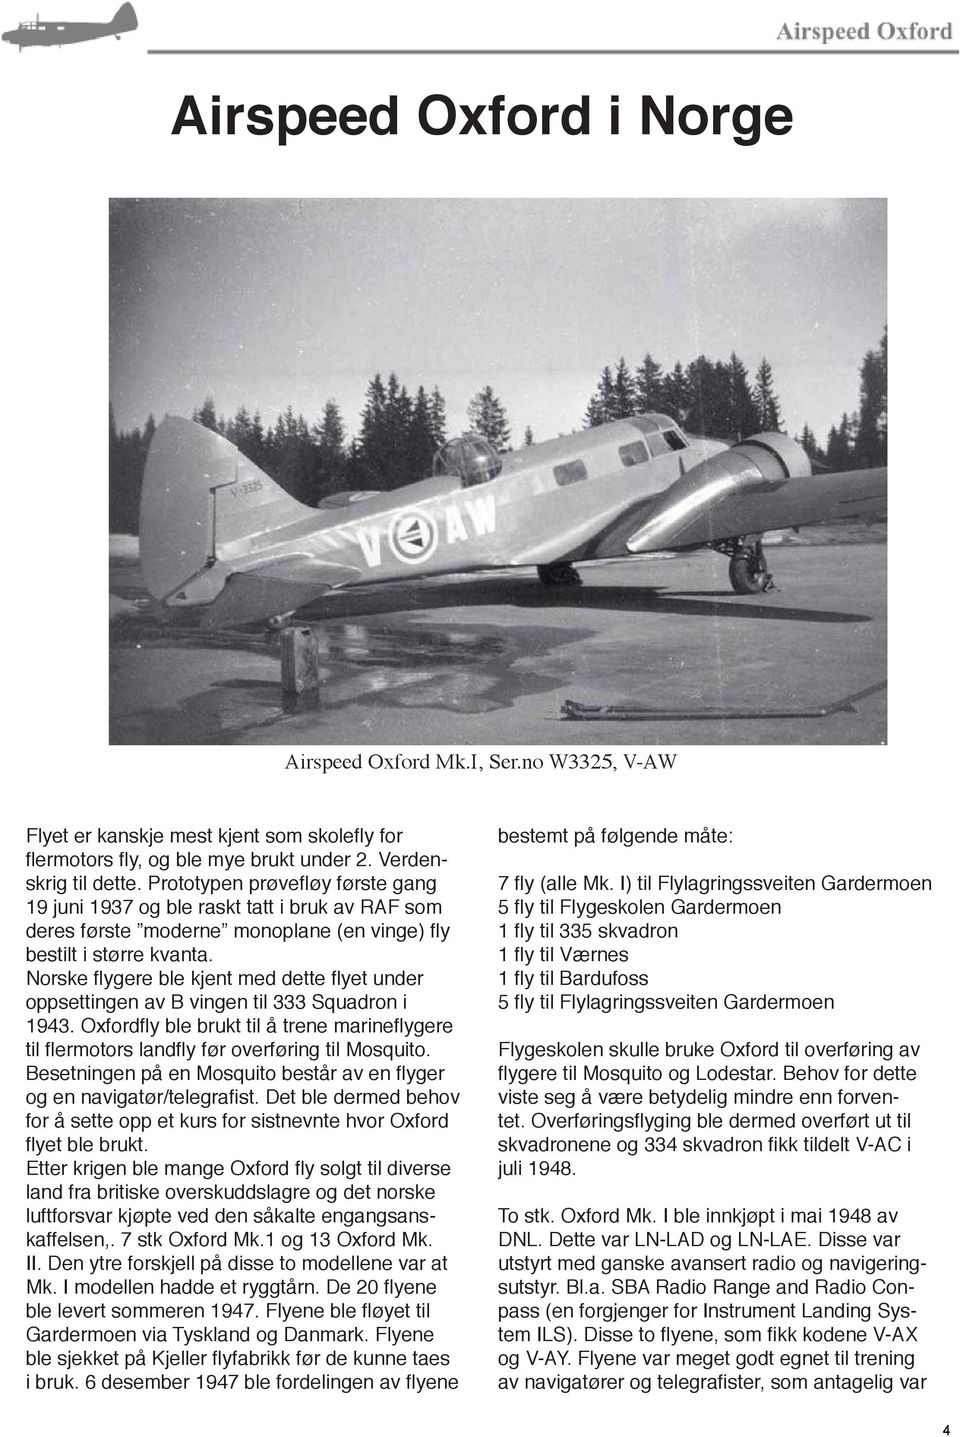 Norske flygere ble kjent med dette flyet under oppsettingen av B vingen til 333 Squadron i 1943. Oxfordfly ble brukt til å trene marineflygere til flermotors landfly før overføring til Mosquito.